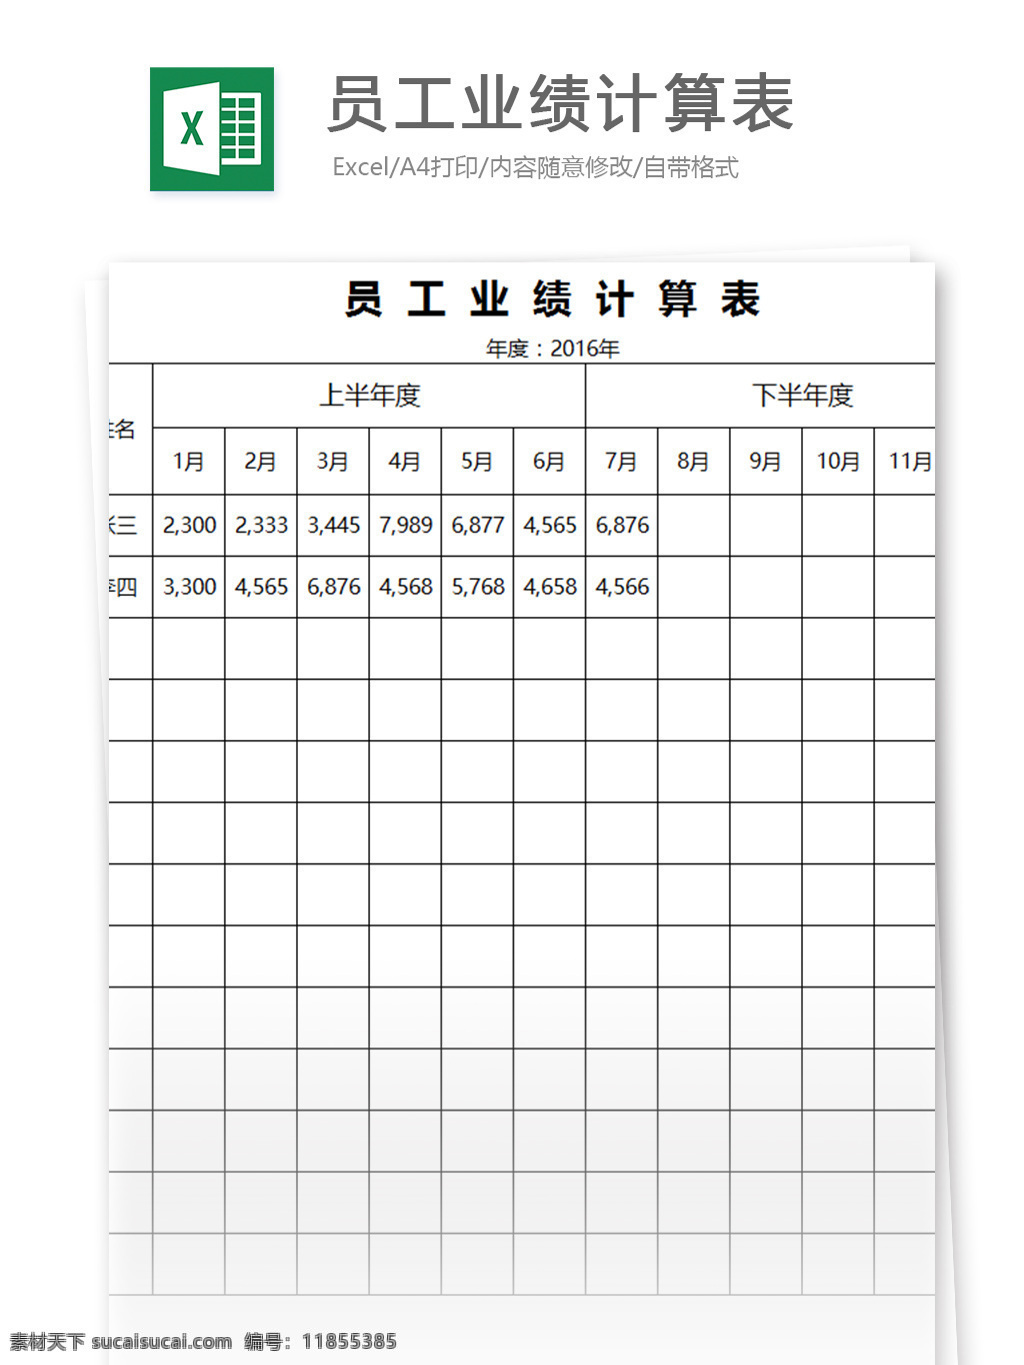 员工 业绩 计算 表 表格模板 图表 表格设计 表格 营销 明细表 计算表 业绩表 员工业绩